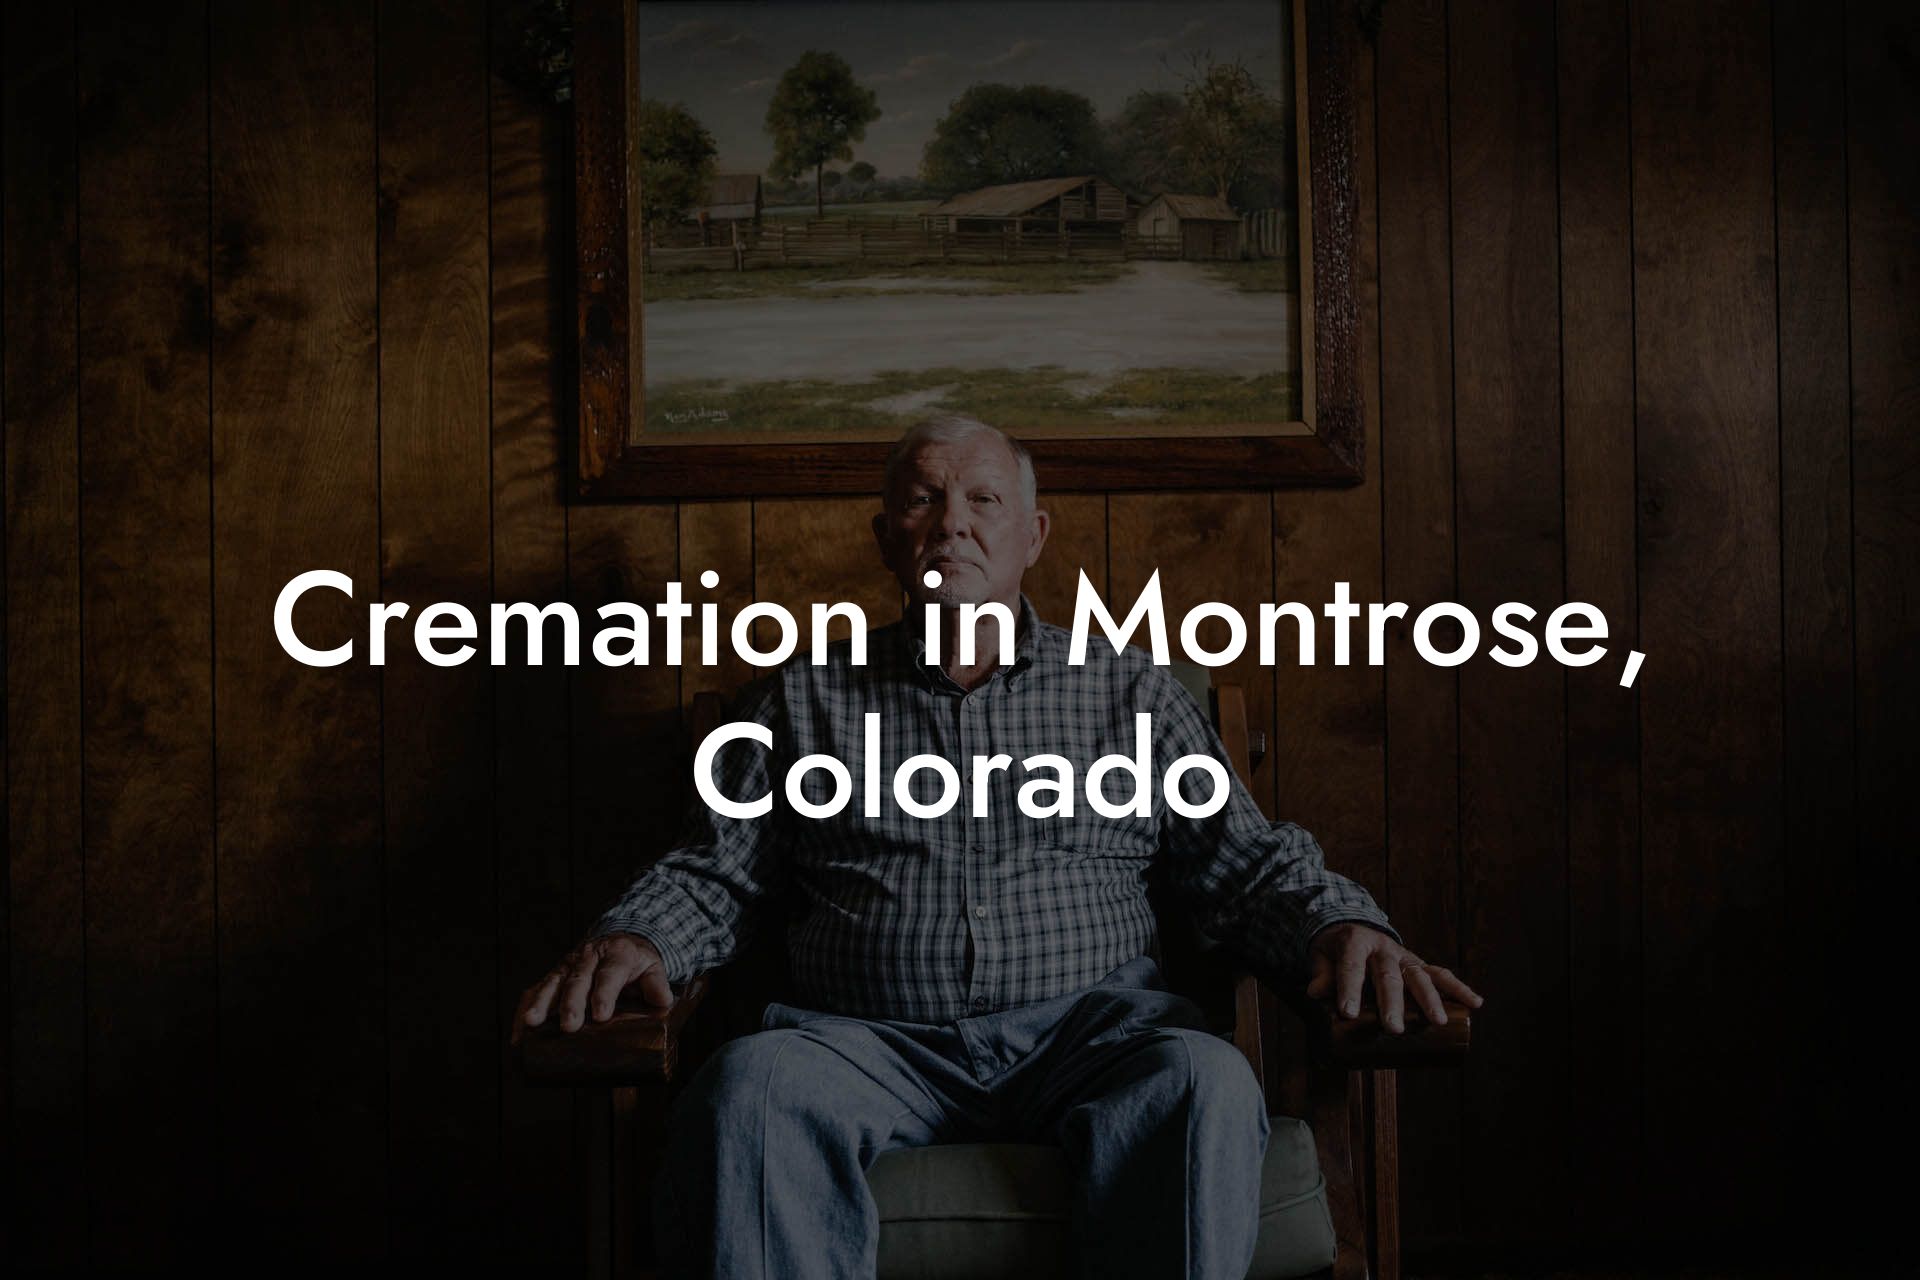 Cremation in Montrose, Colorado